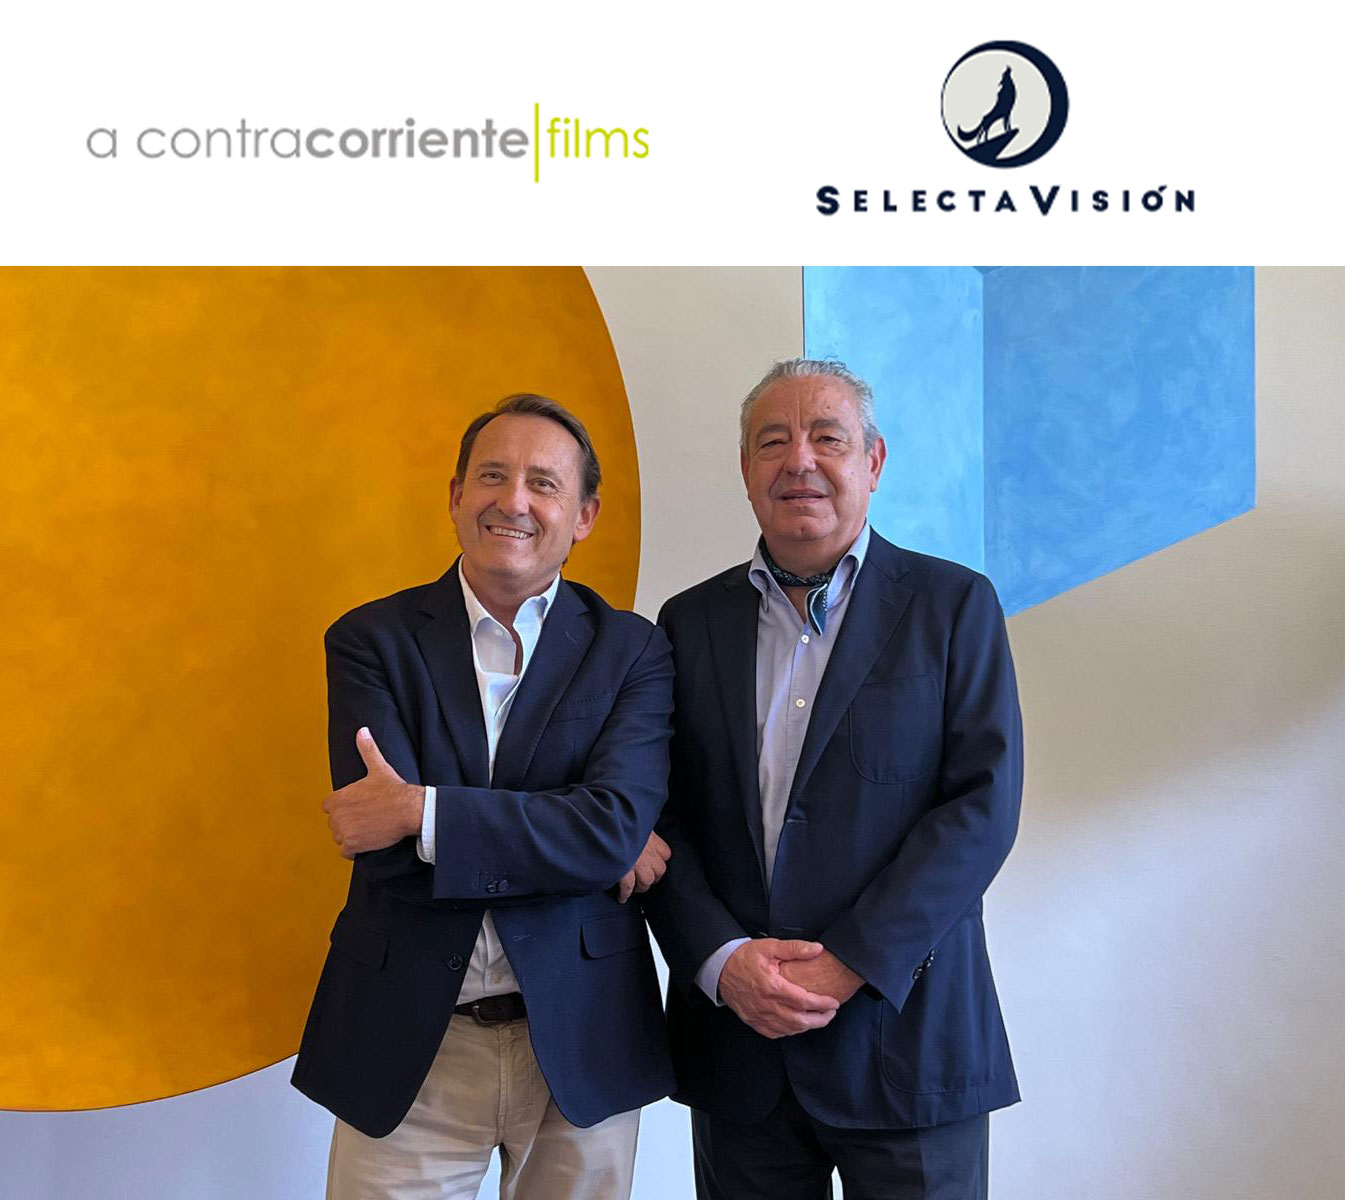 A Contracorriente Films refuerza su posición en el mercado con la integración de SelectaVisión, referente en la distribución de anime en España